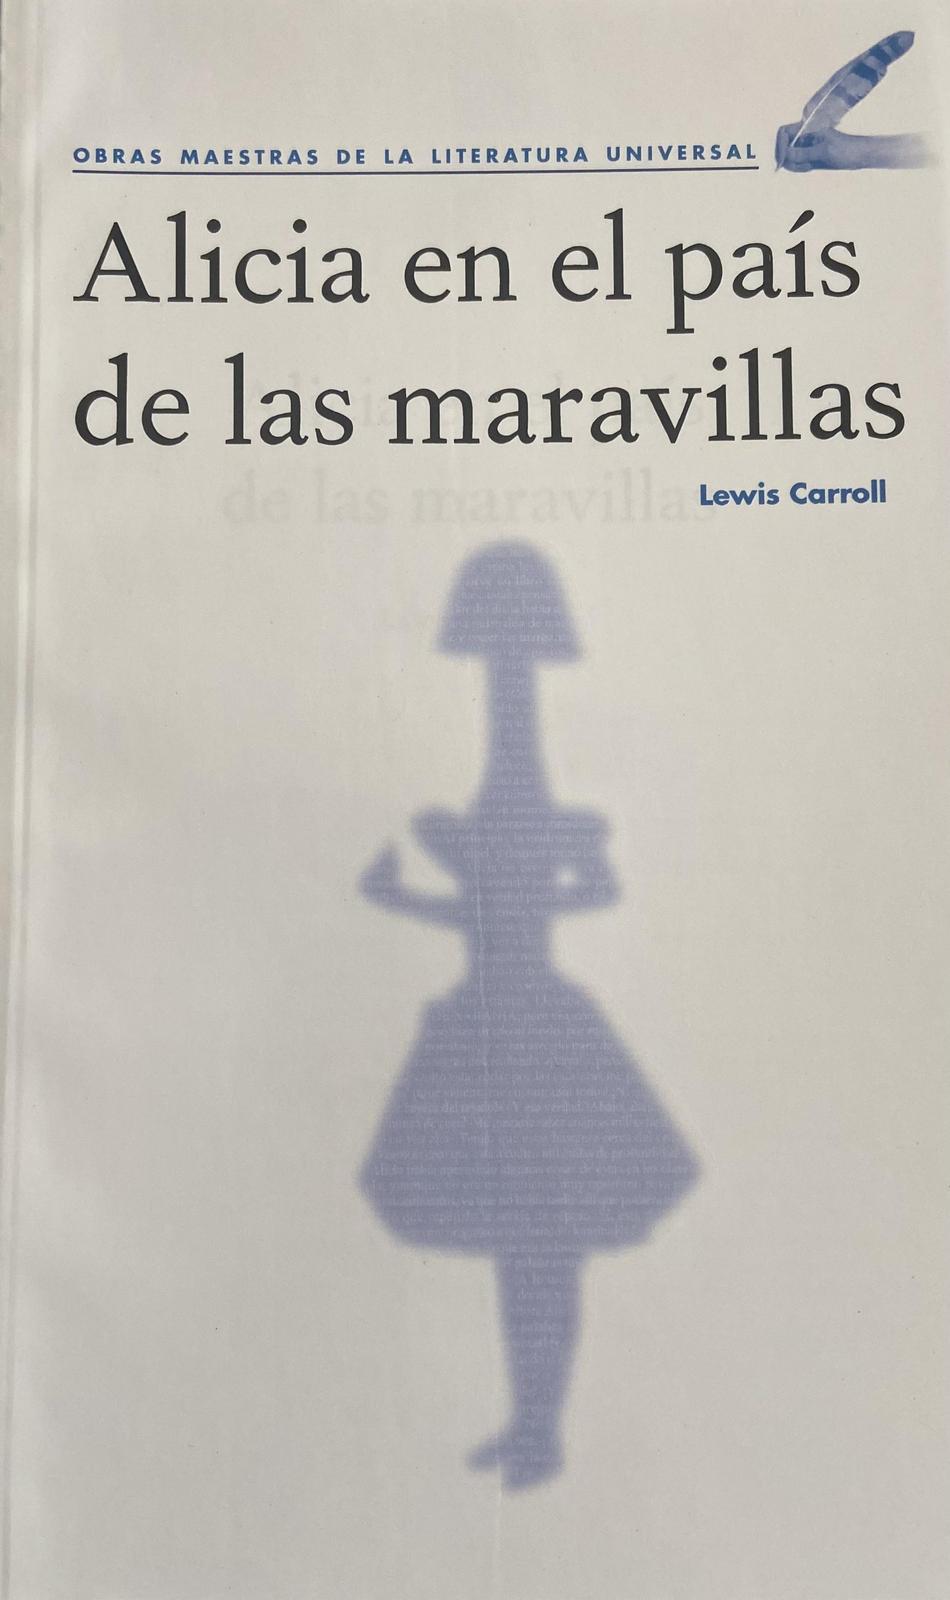 Lewis Carroll: Alicia en el país de las maravillas (Spanish language, 2020, Agencia Promotora de Publicaciones, S.A. de C.V.)